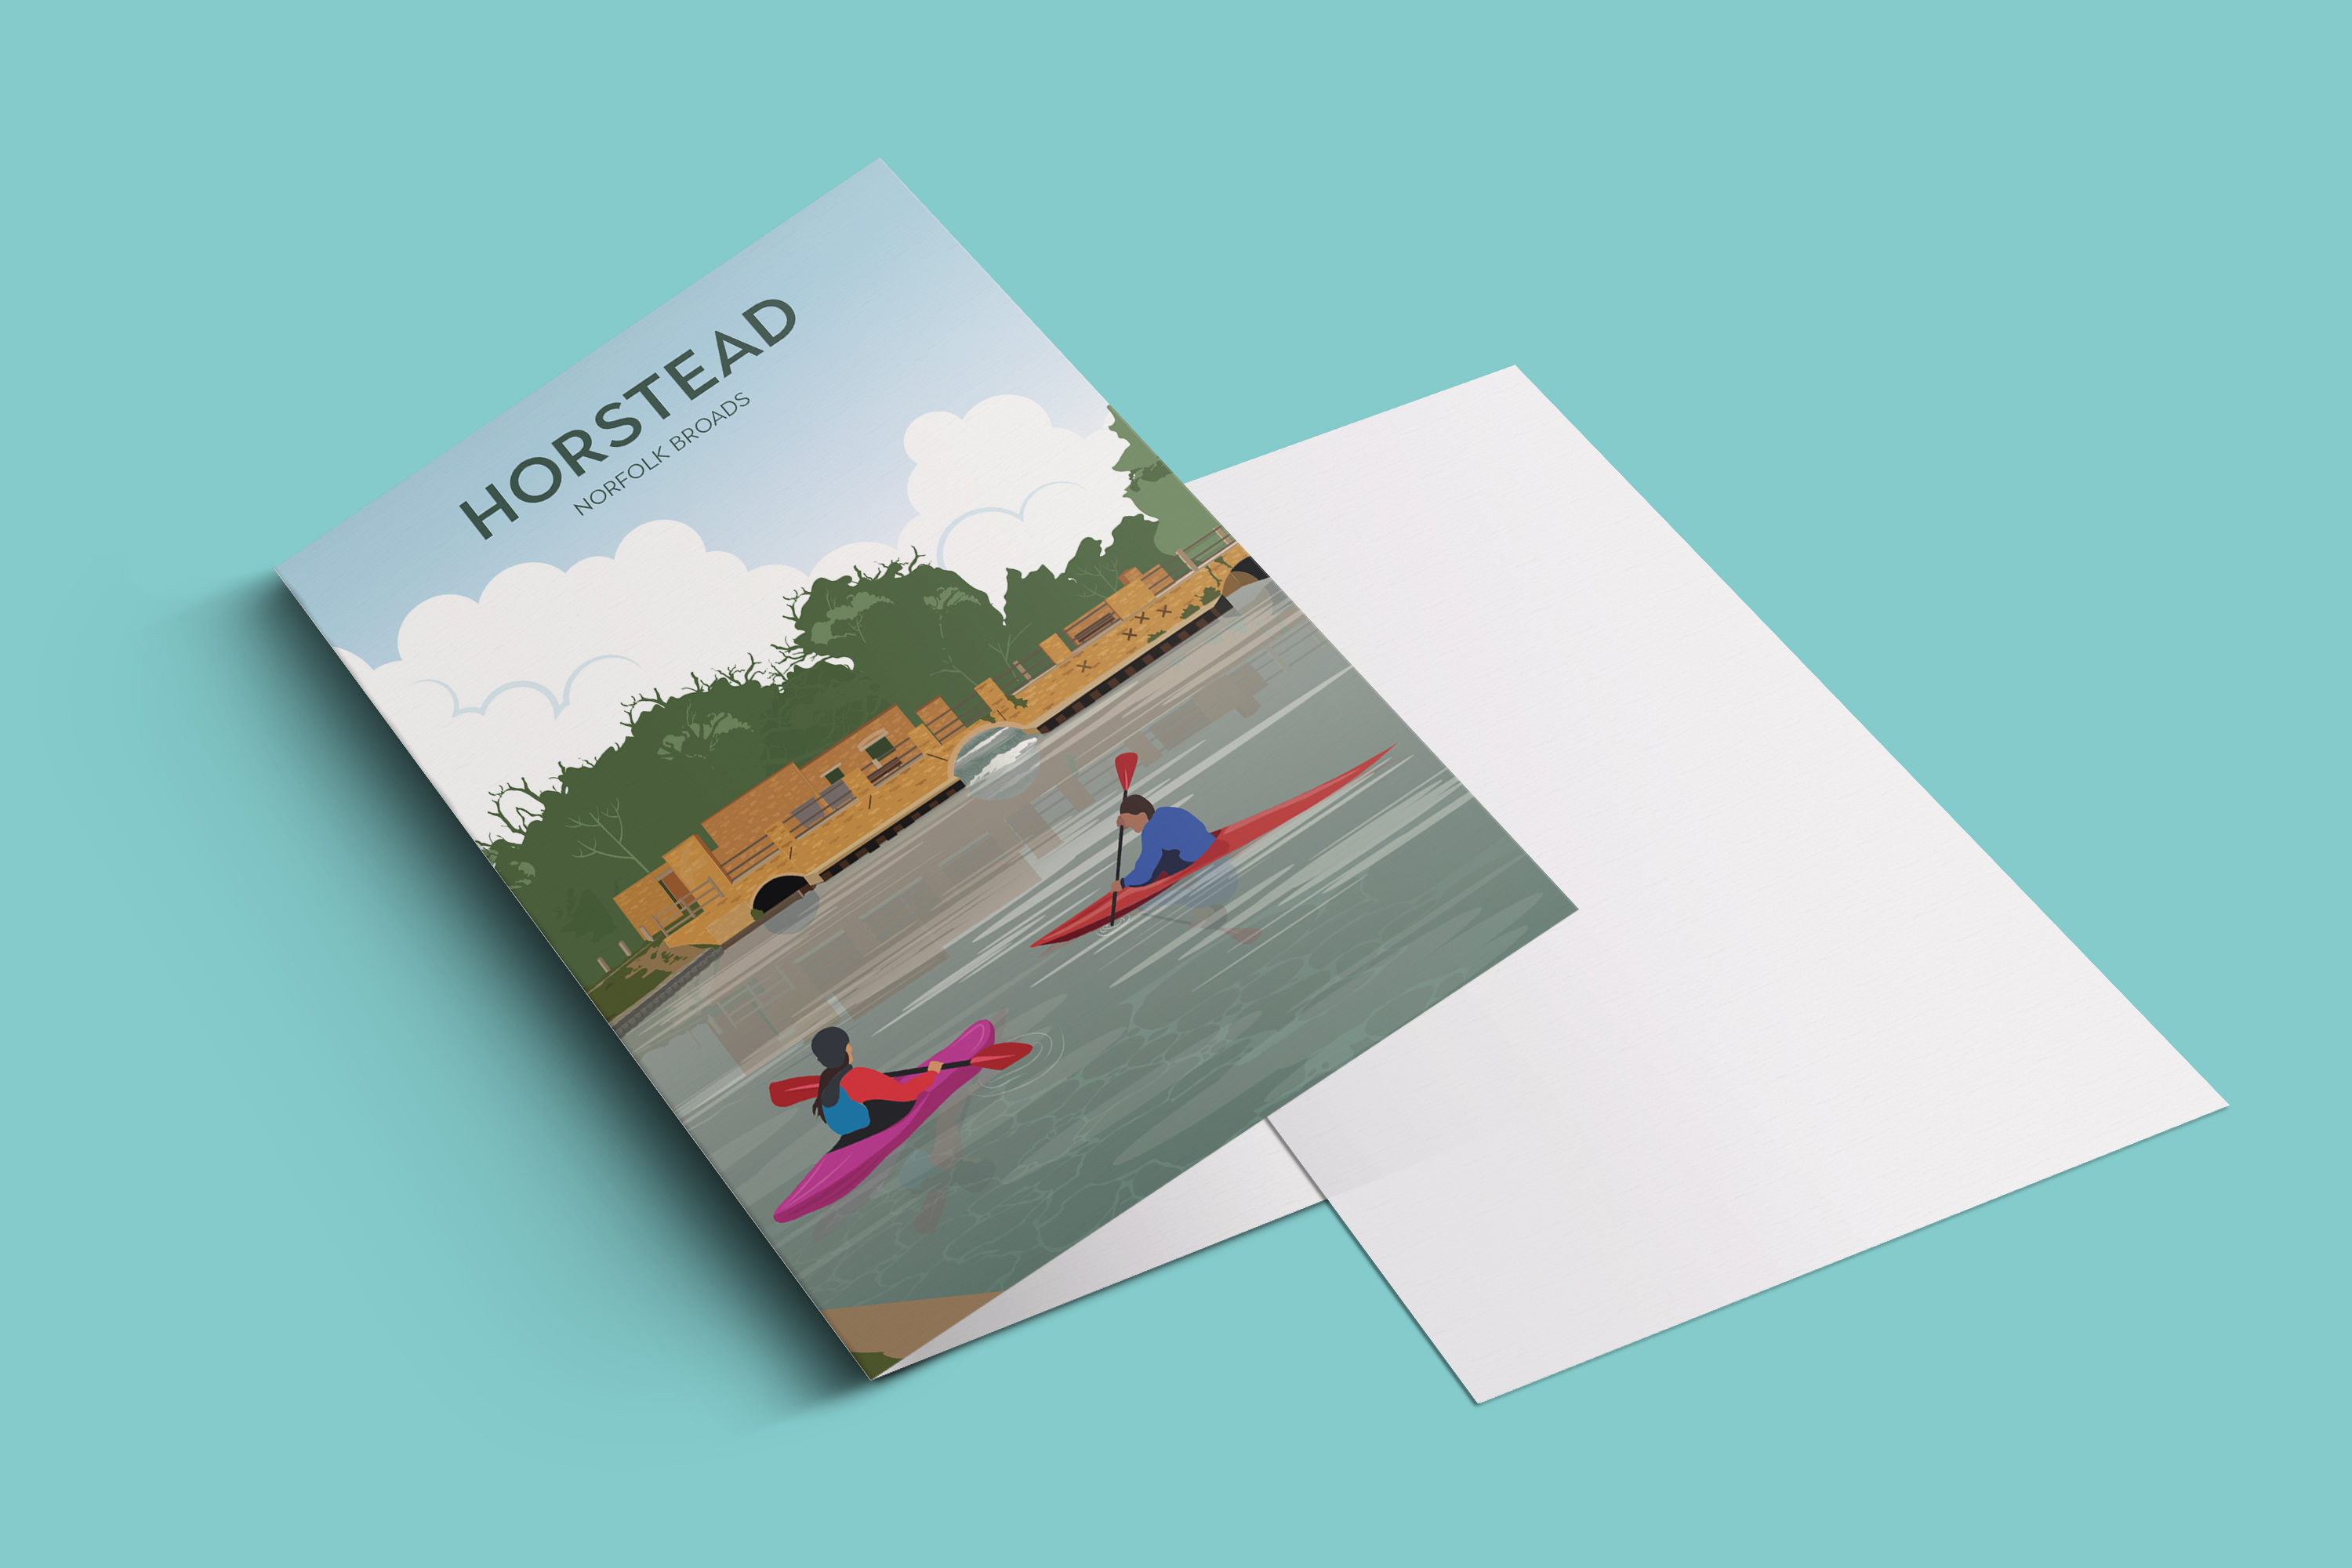 Horstead canoe A6 card